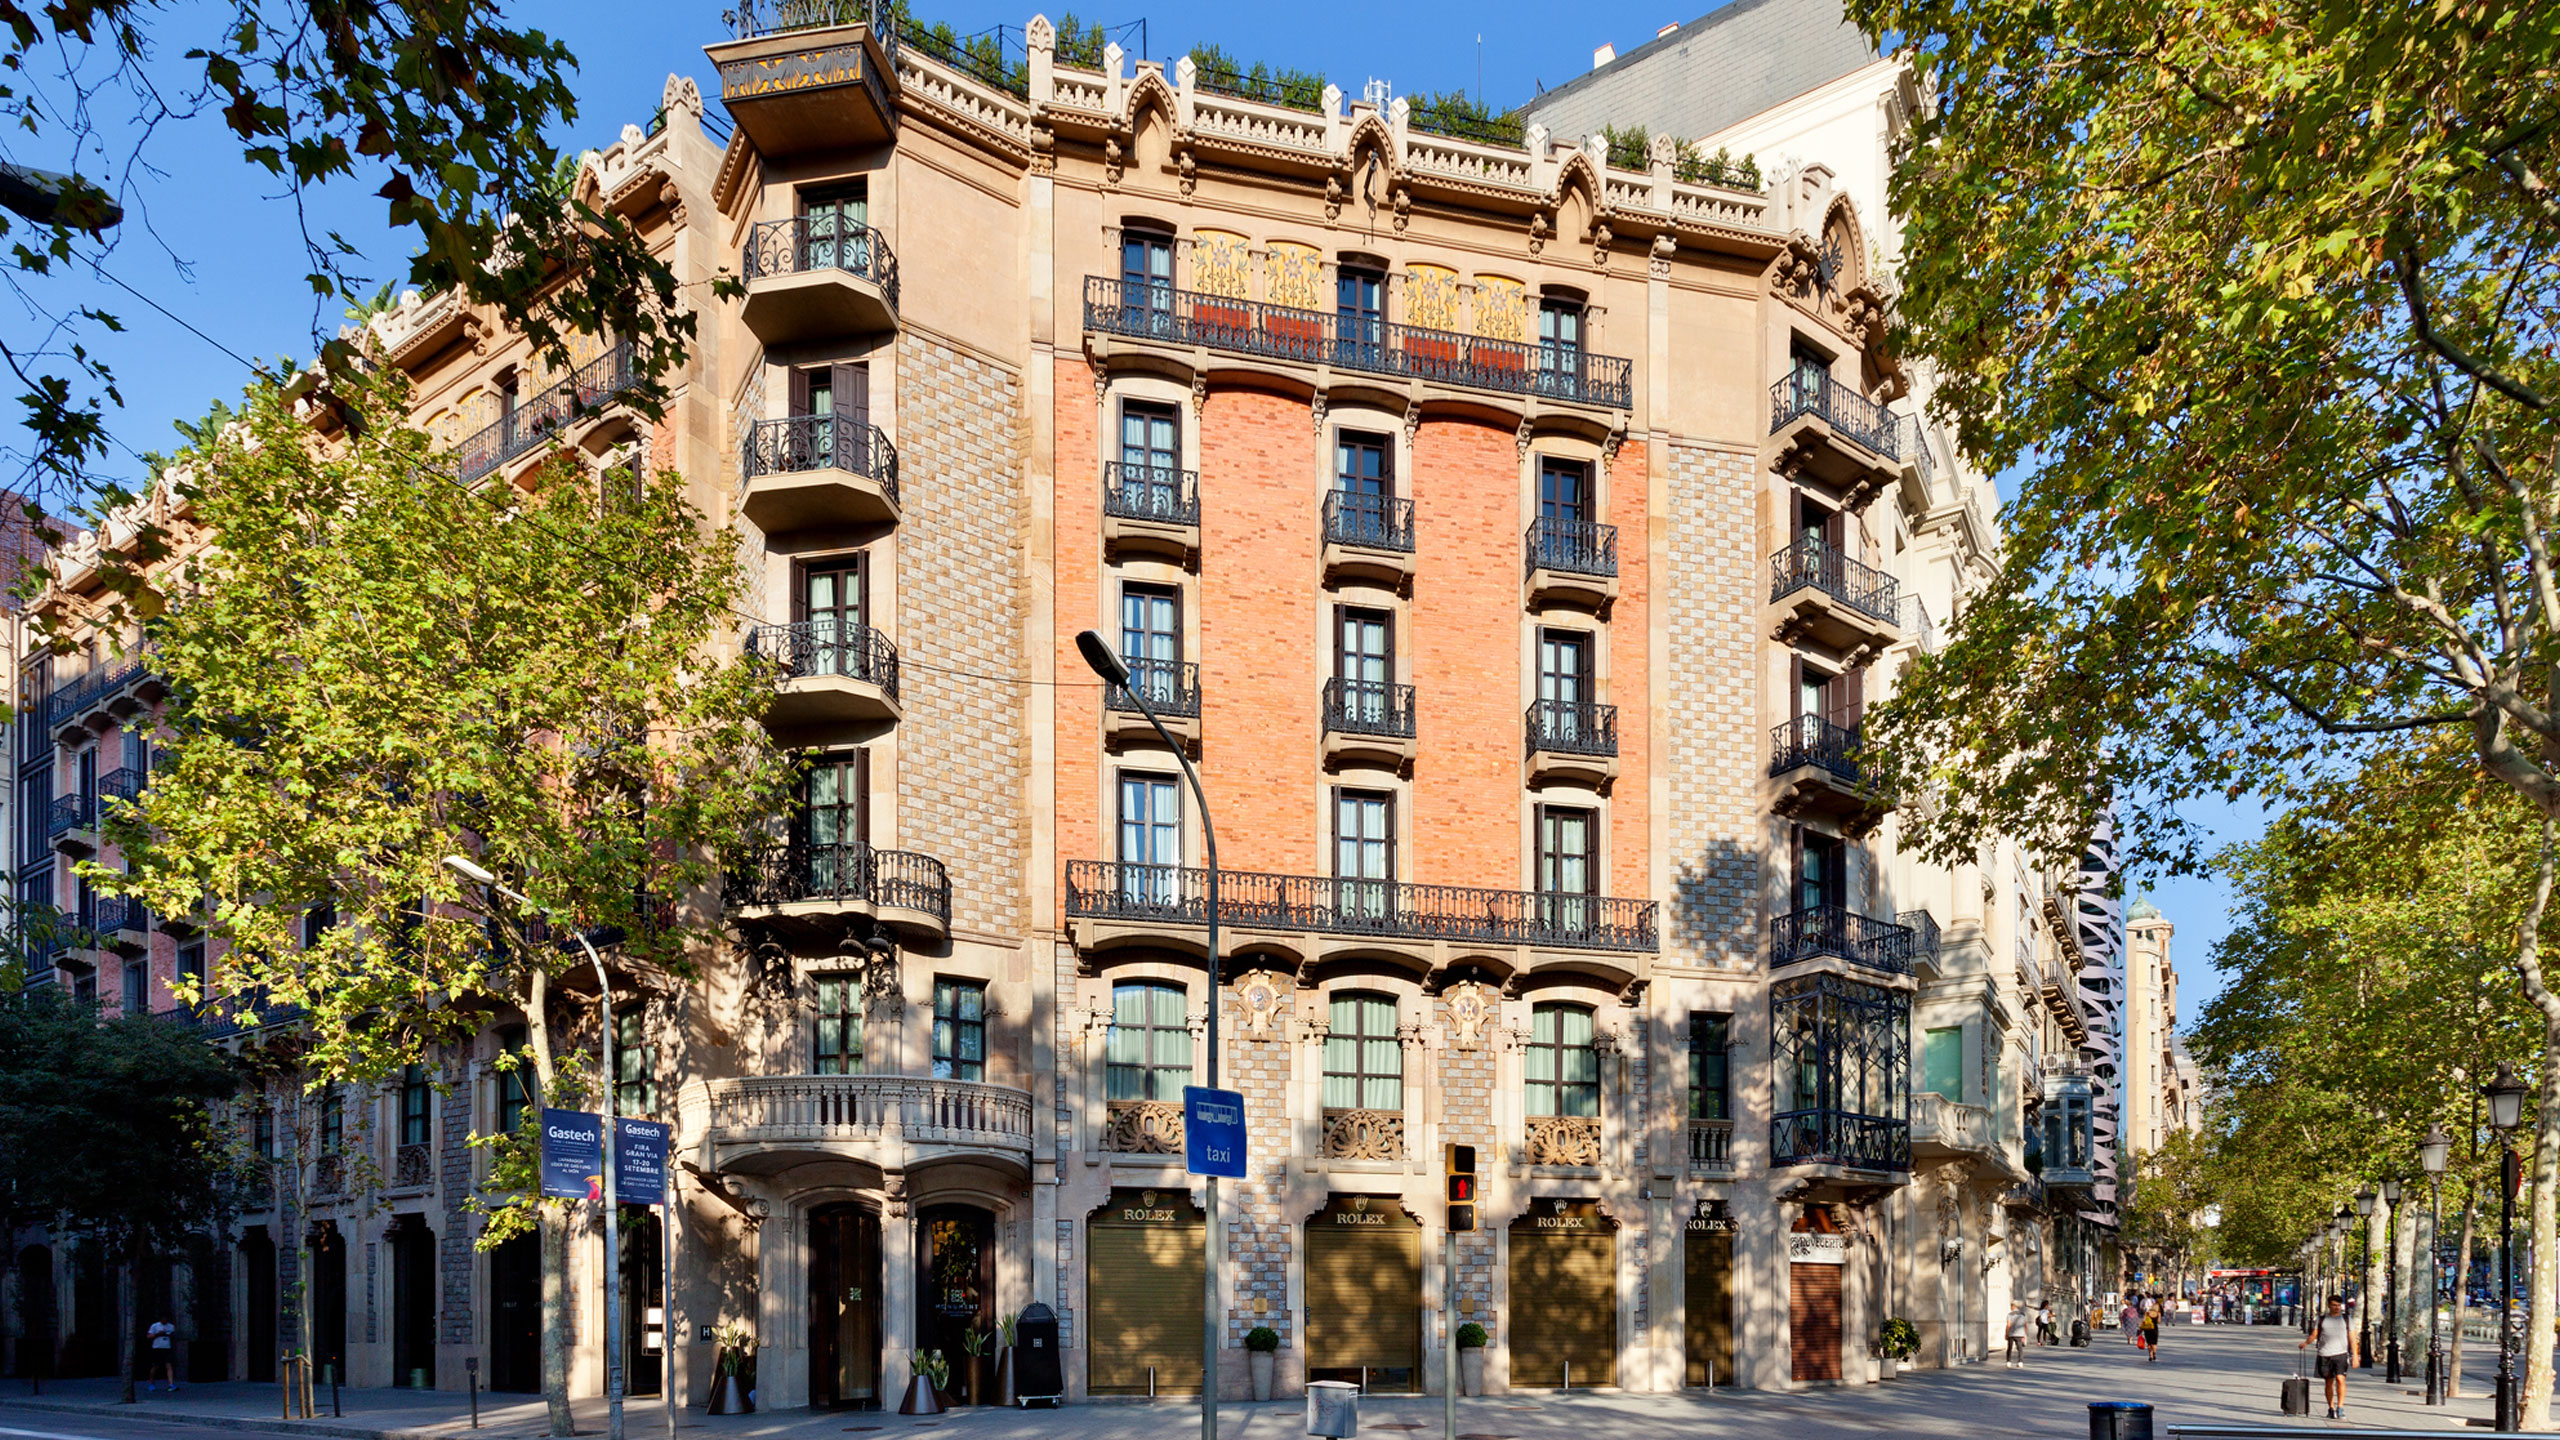 The Monument es el único hotel en España con 4 estrellas Michelin